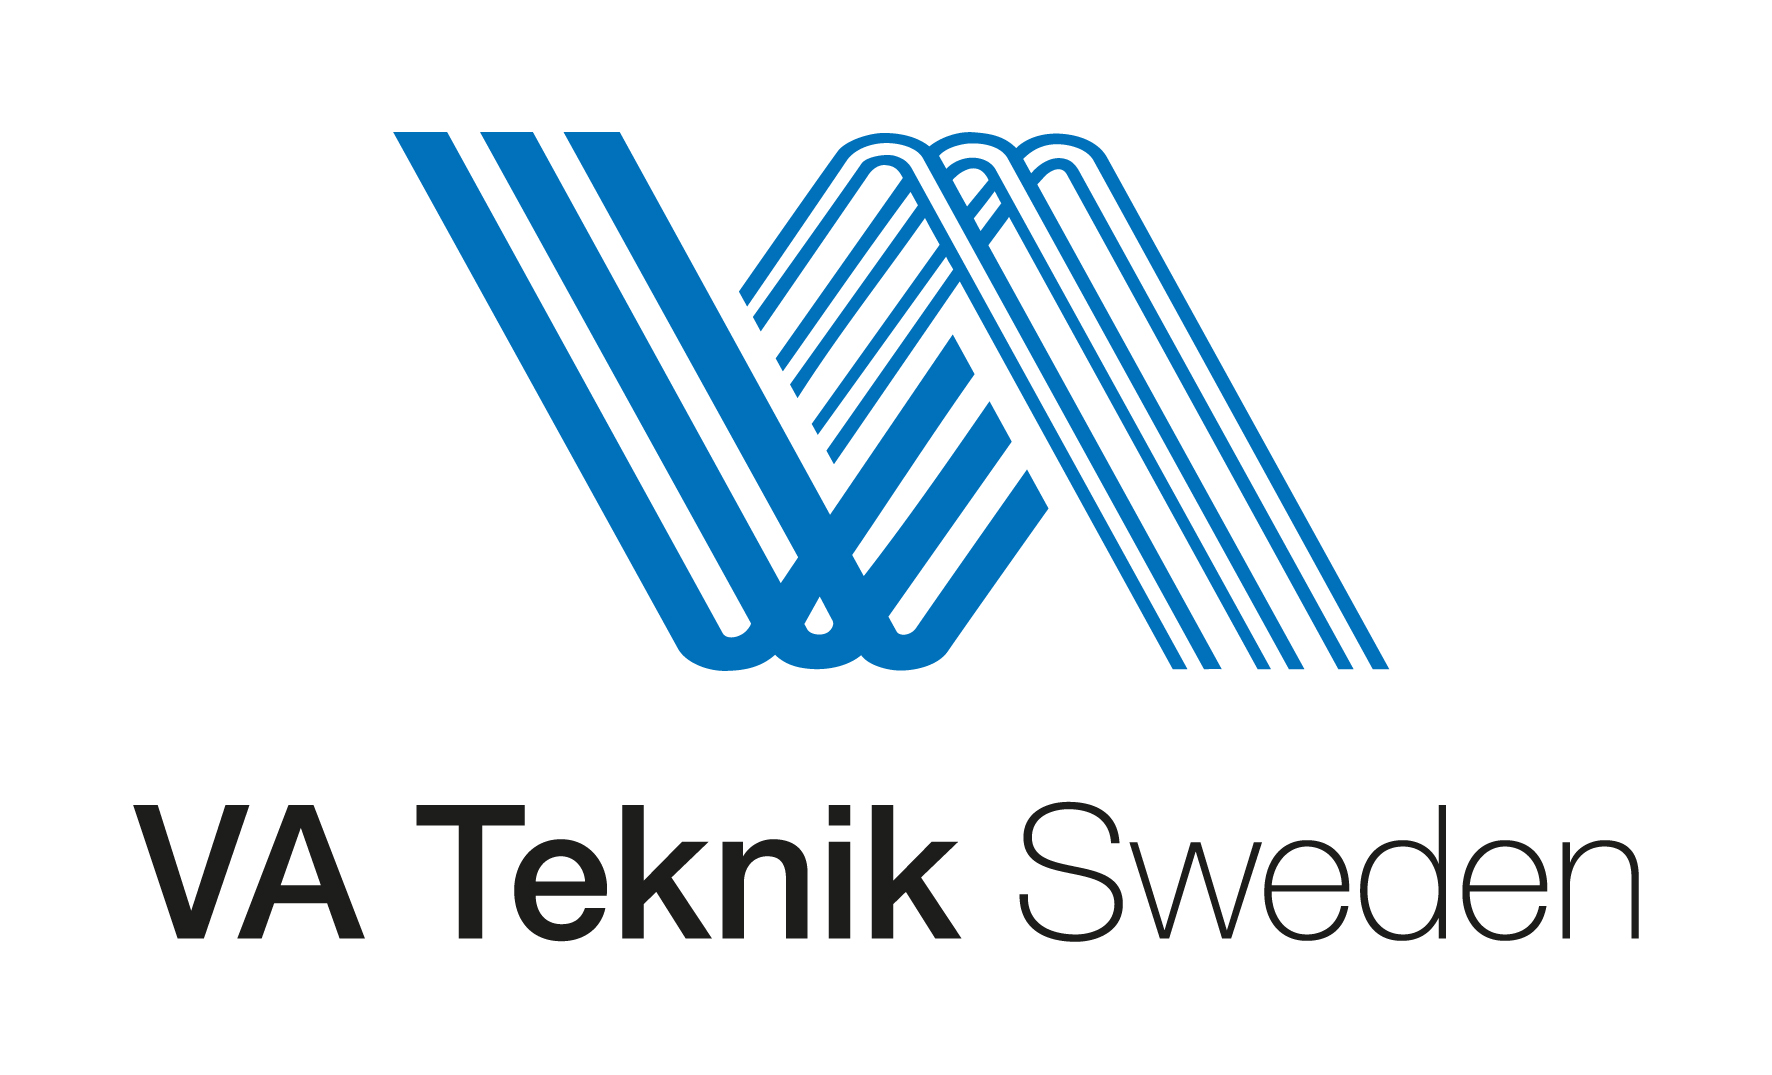 VA Teknik Sweden